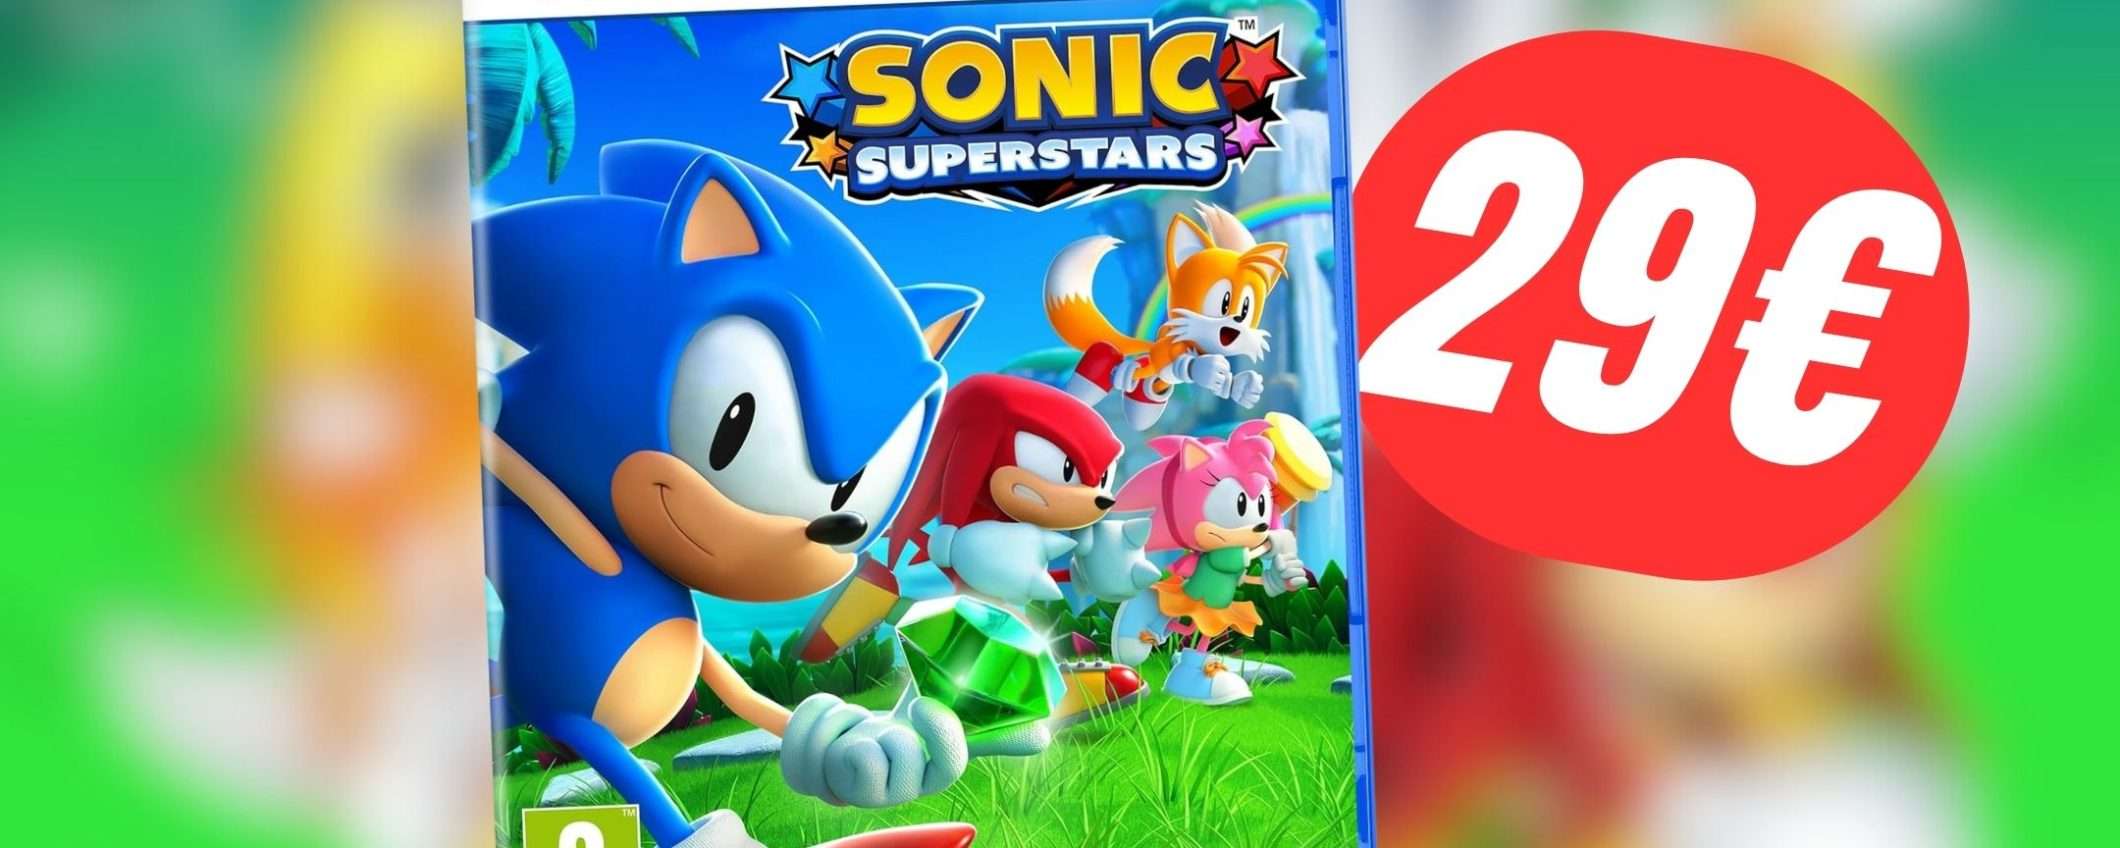 PREZZO FOLLE per il nuovissimo Sonic Superstars: costa solo 29€!